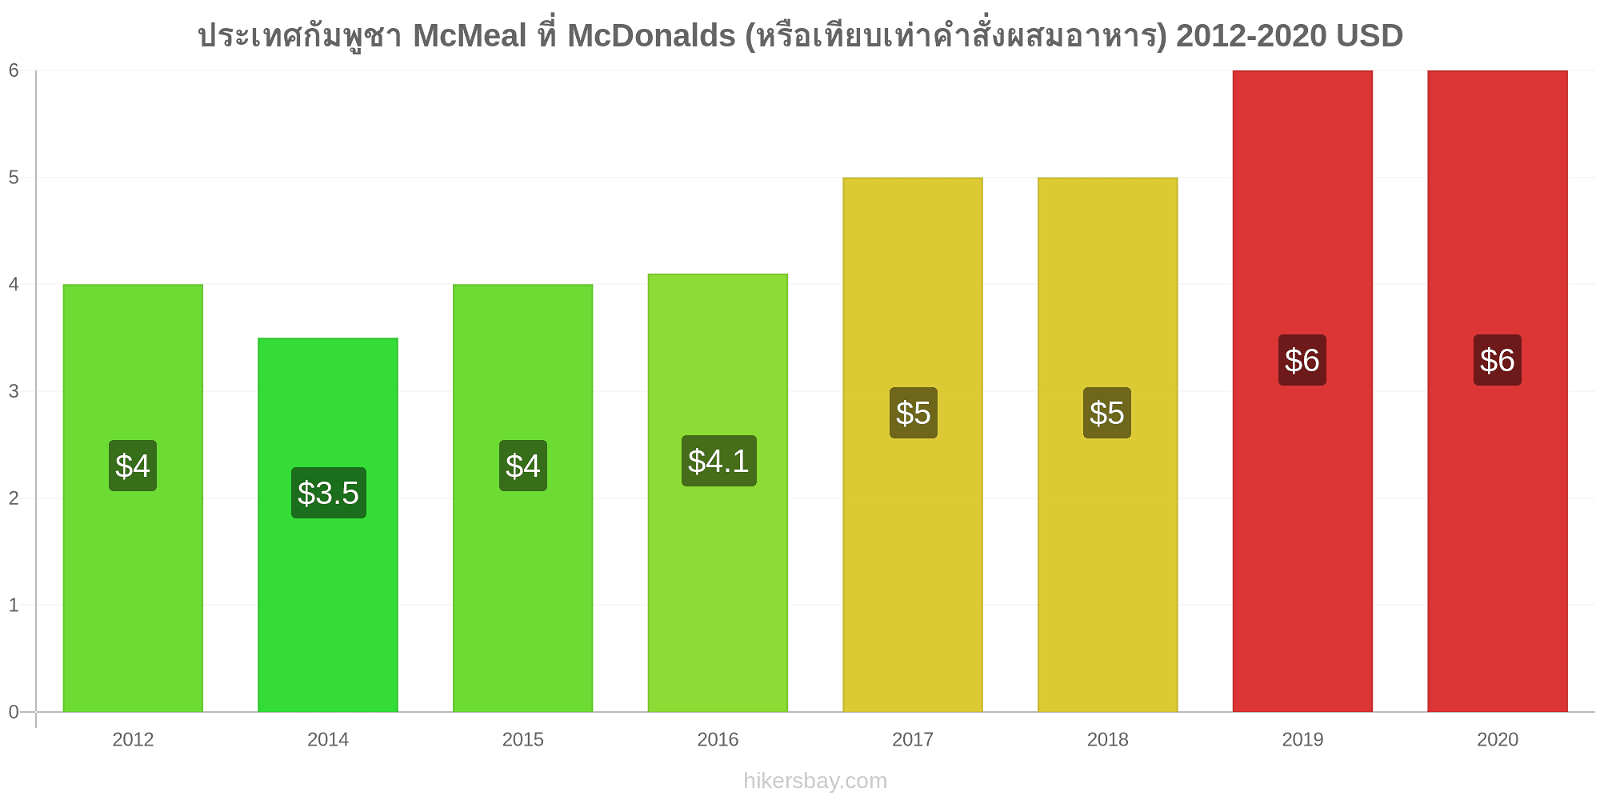 ประเทศกัมพูชา การเปลี่ยนแปลงราคา McMeal ที่ McDonalds (หรือเทียบเท่าคำสั่งผสมอาหาร) hikersbay.com